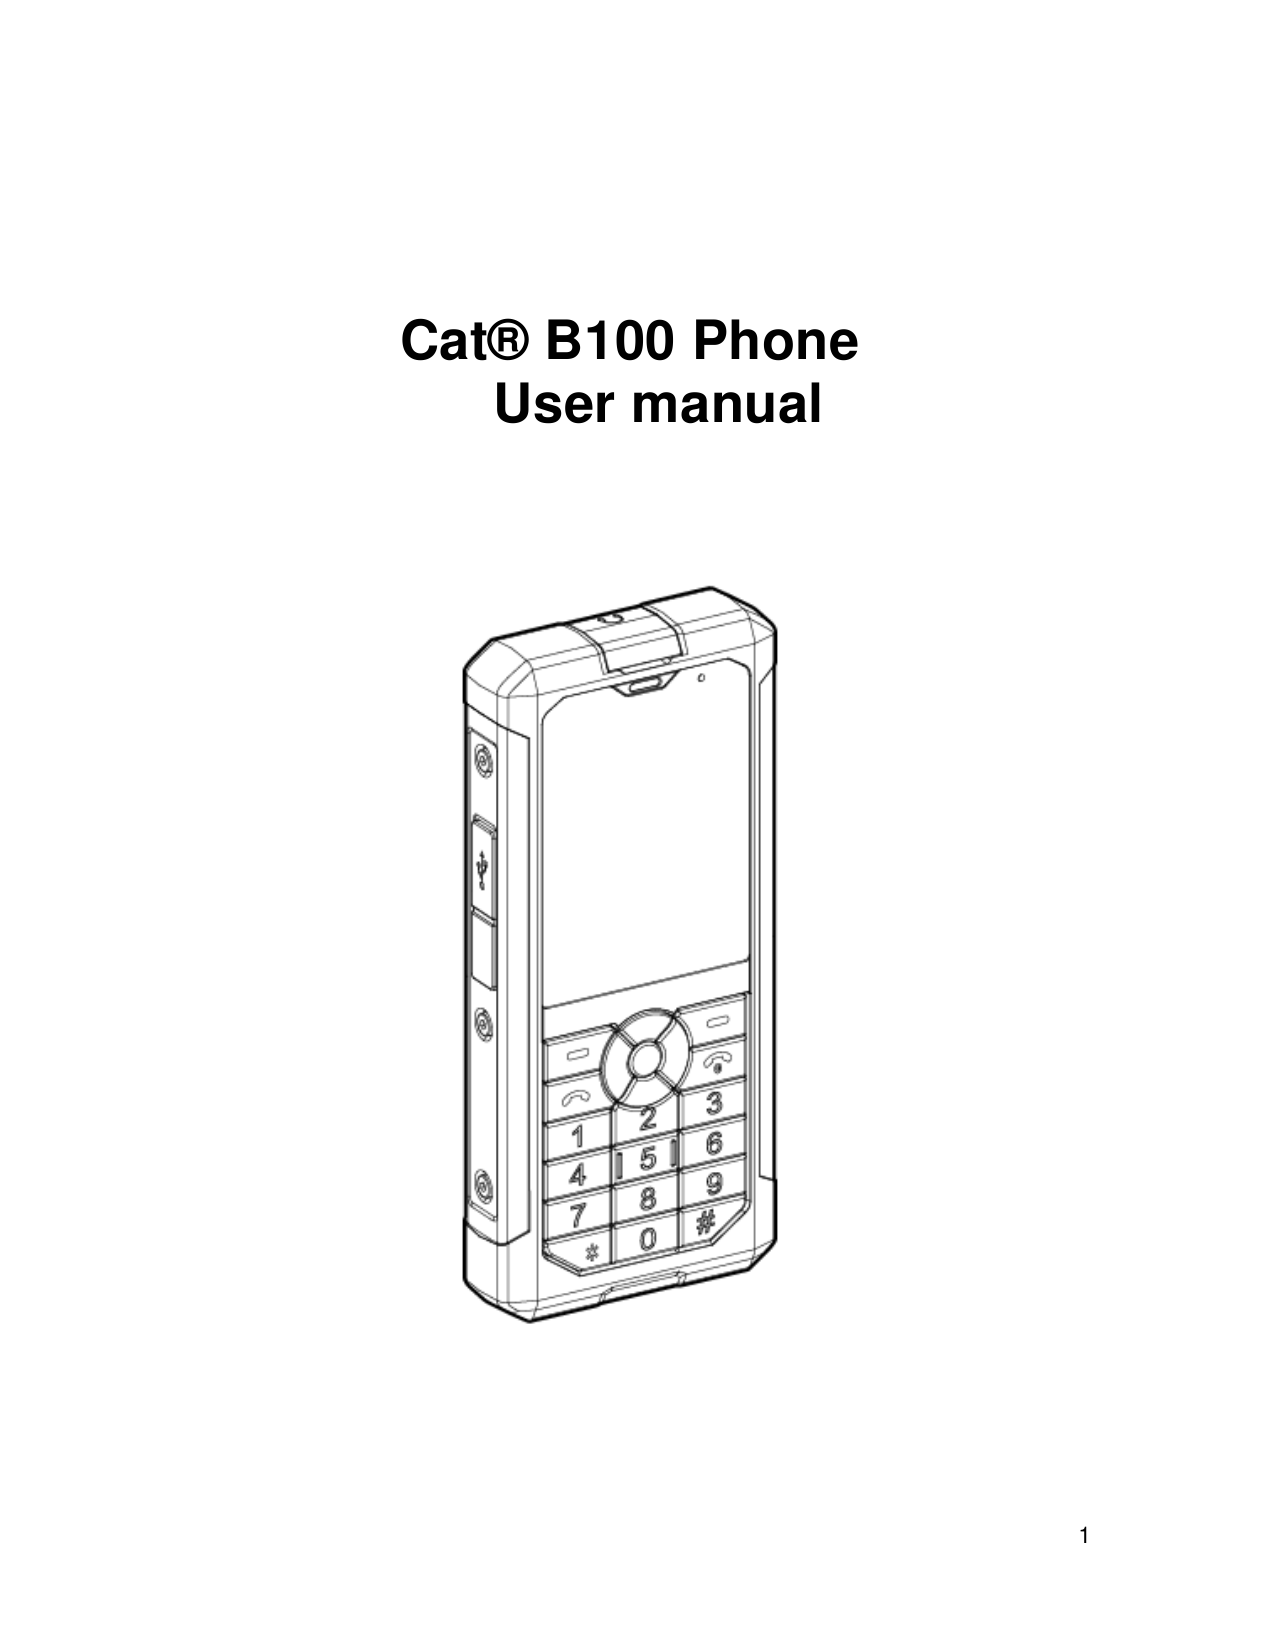 Cat® B100 PhoneUser manual1